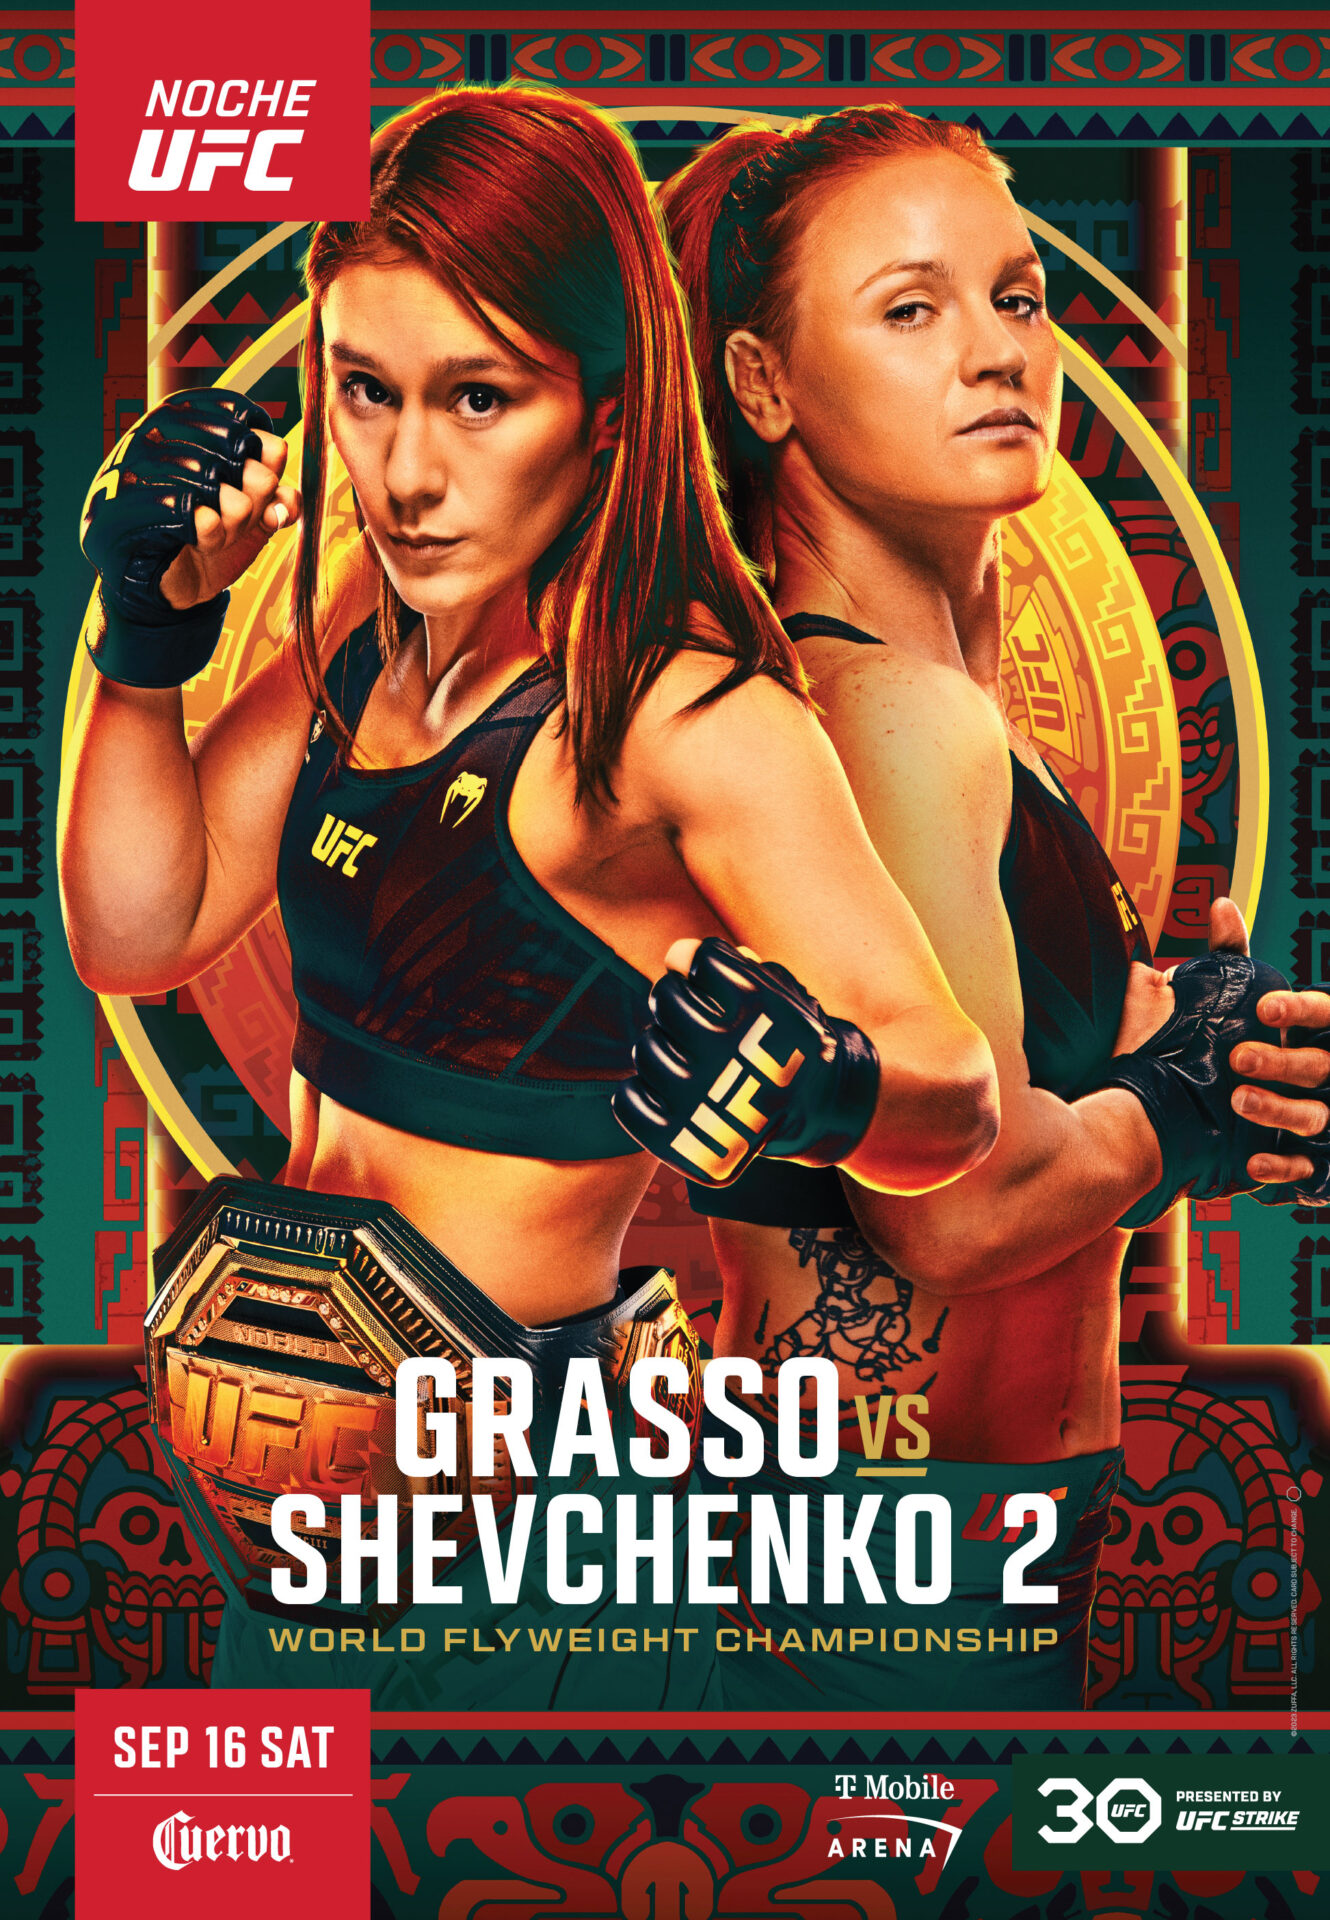 Grasso vs Shevchenko 2